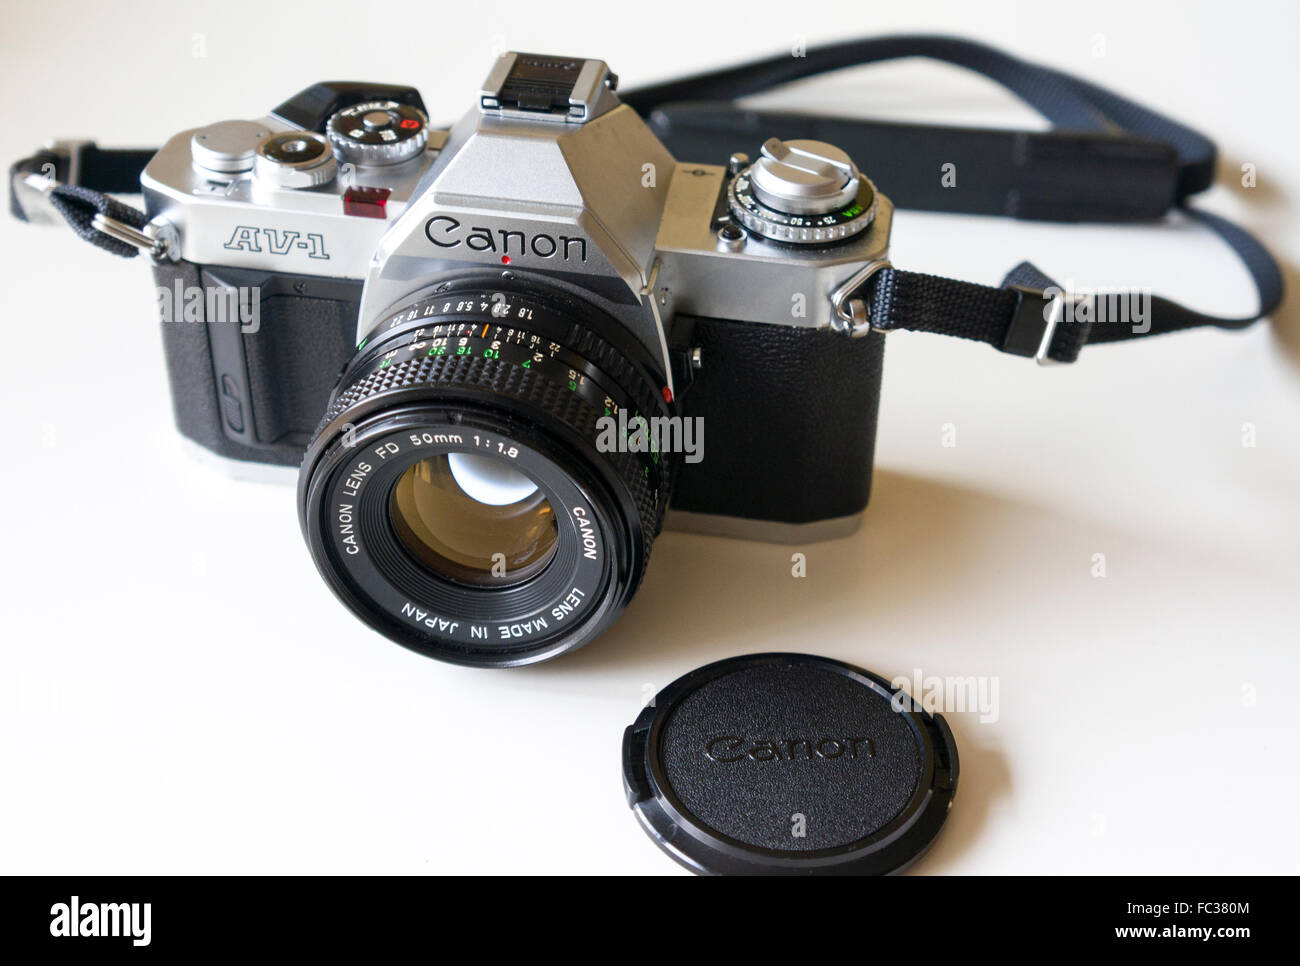 Canon AV-1 35mm Fotocamera analogica e Canon lente FD 50mm f/1.8 close up  Modello di Rilascio: No. Proprietà di rilascio: No Foto stock - Alamy